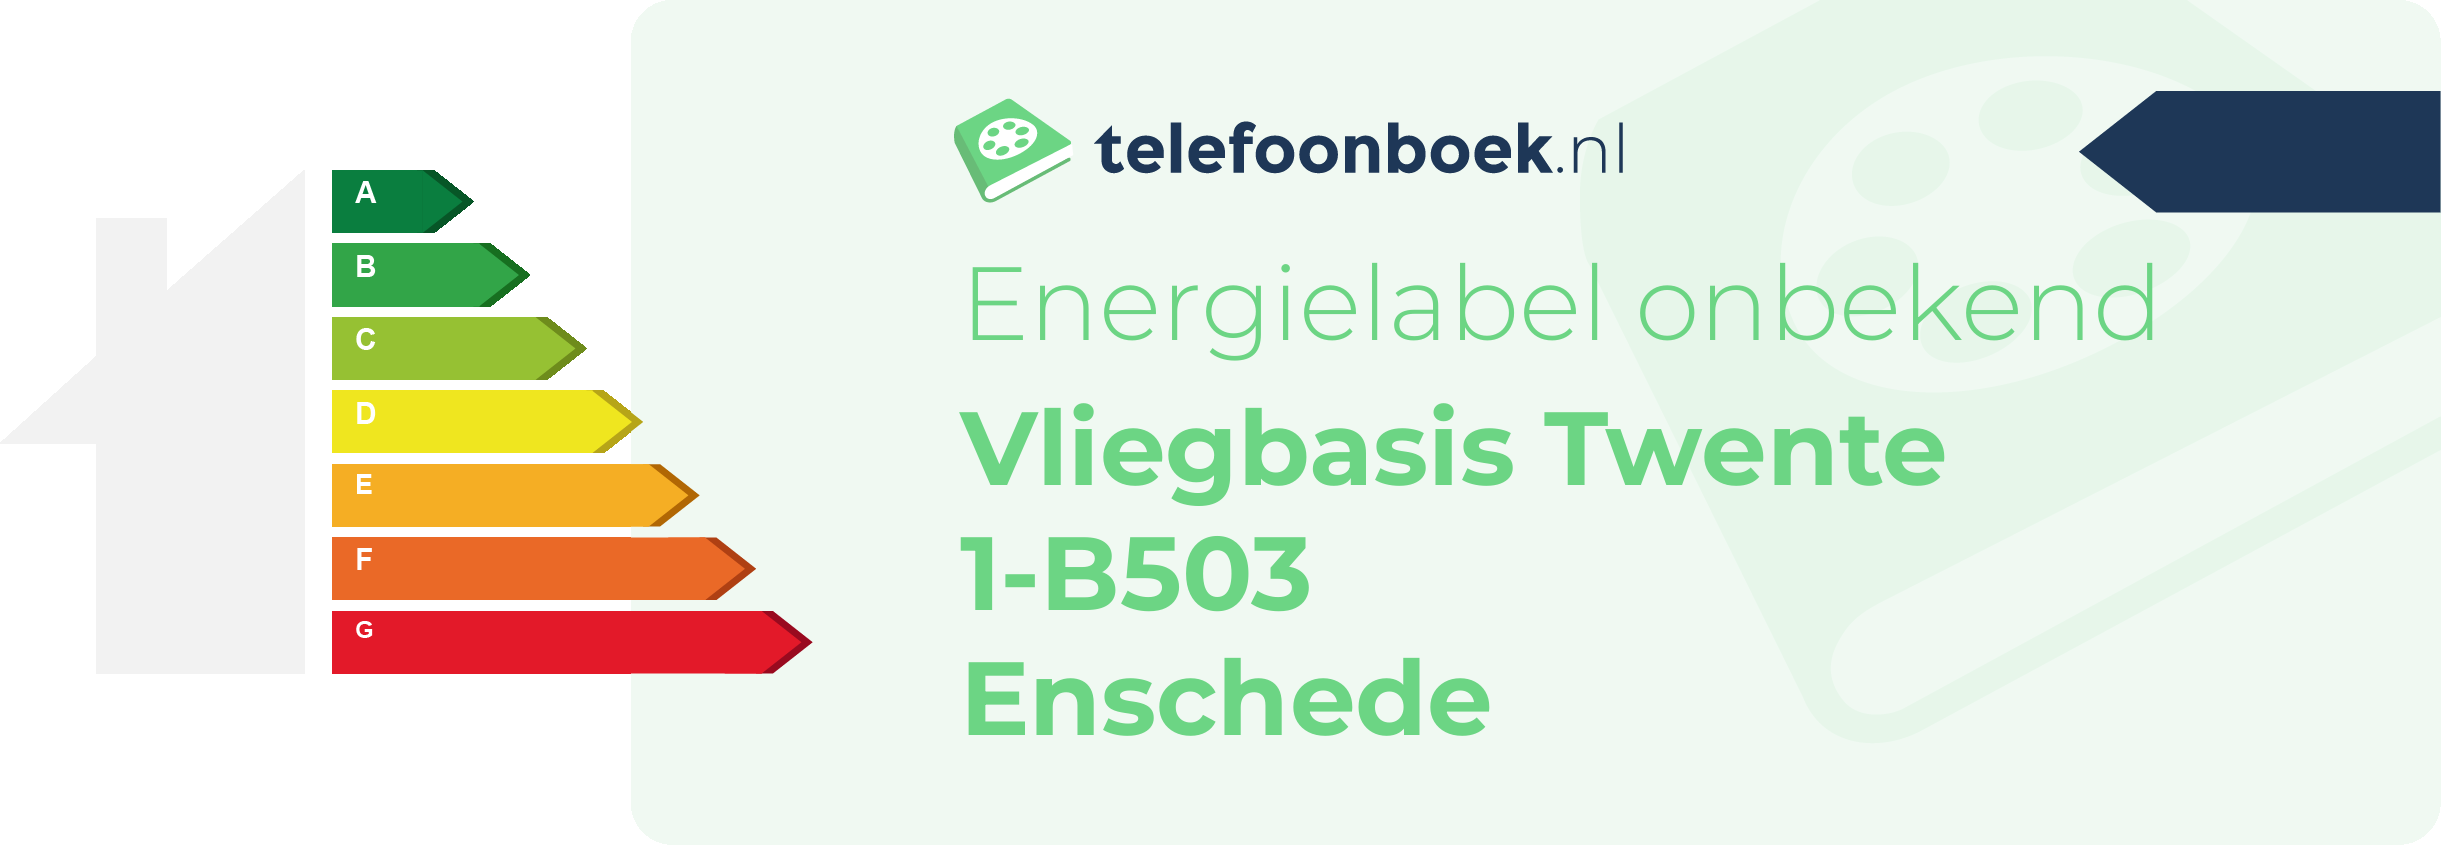 Energielabel Vliegbasis Twente 1-B503 Enschede